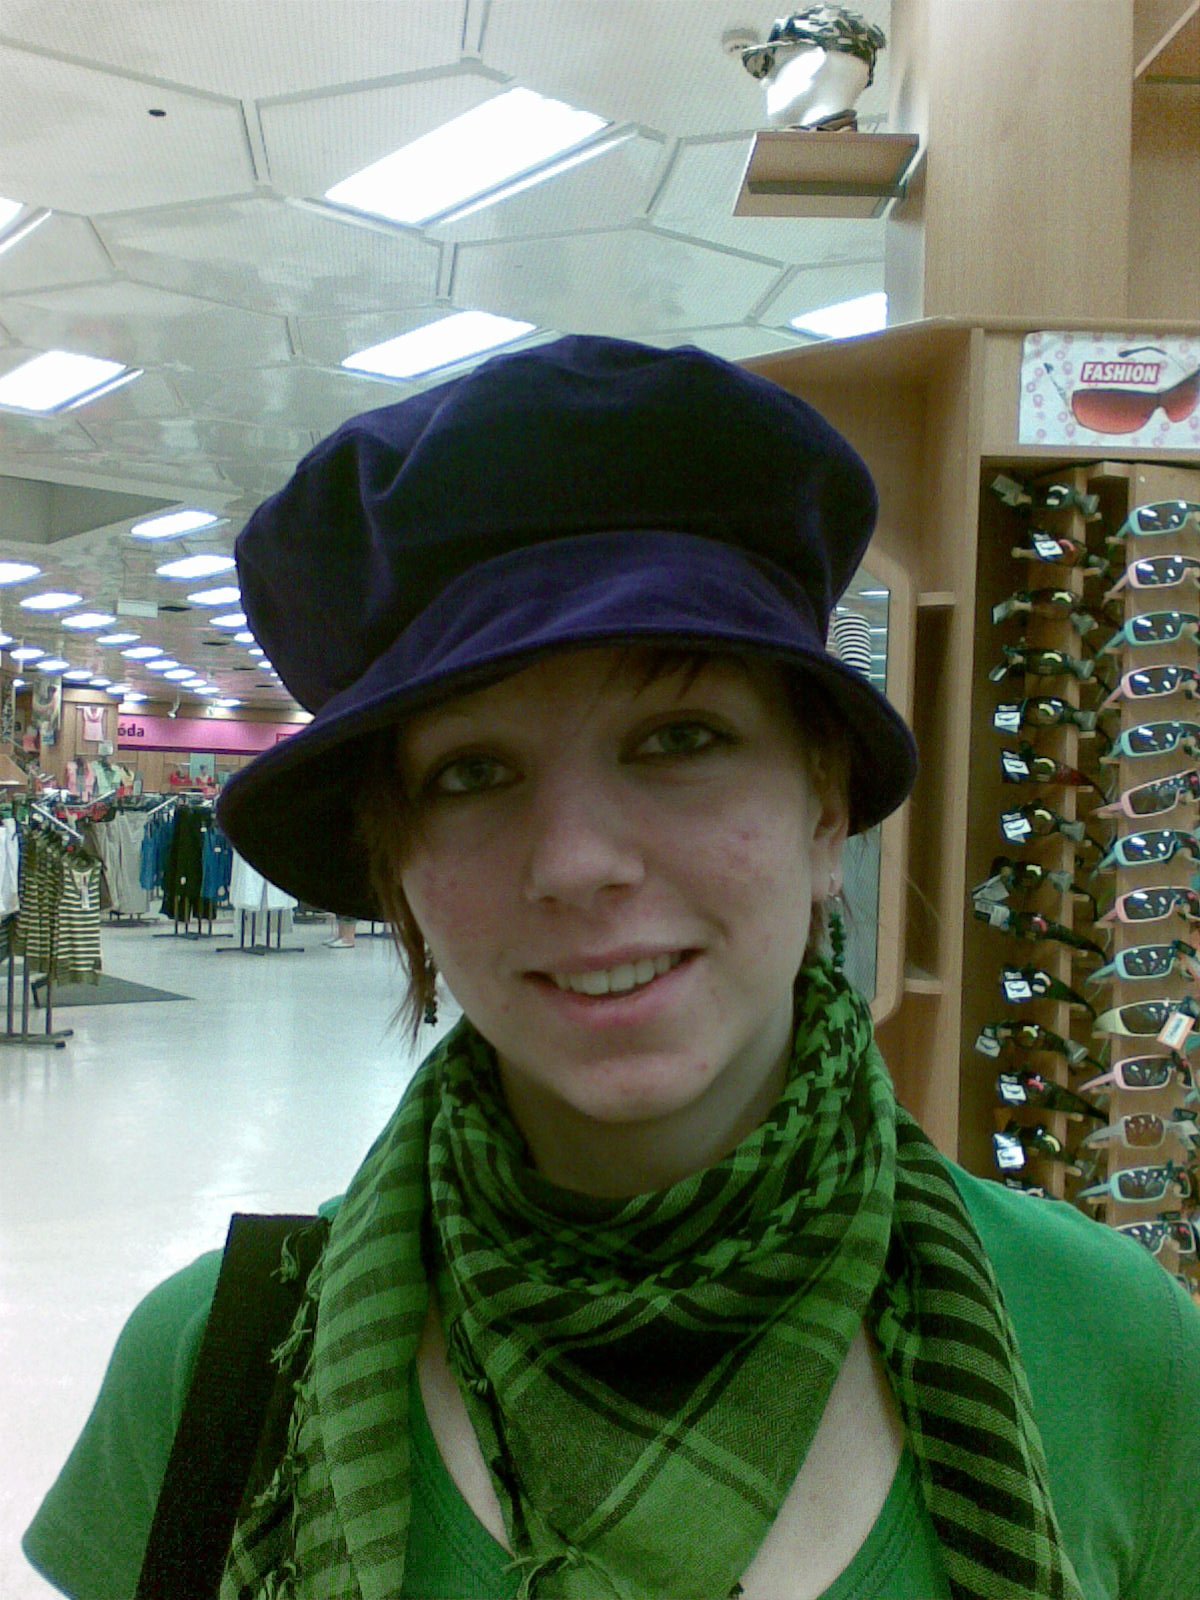 ja a niaky čudný klobúčik....